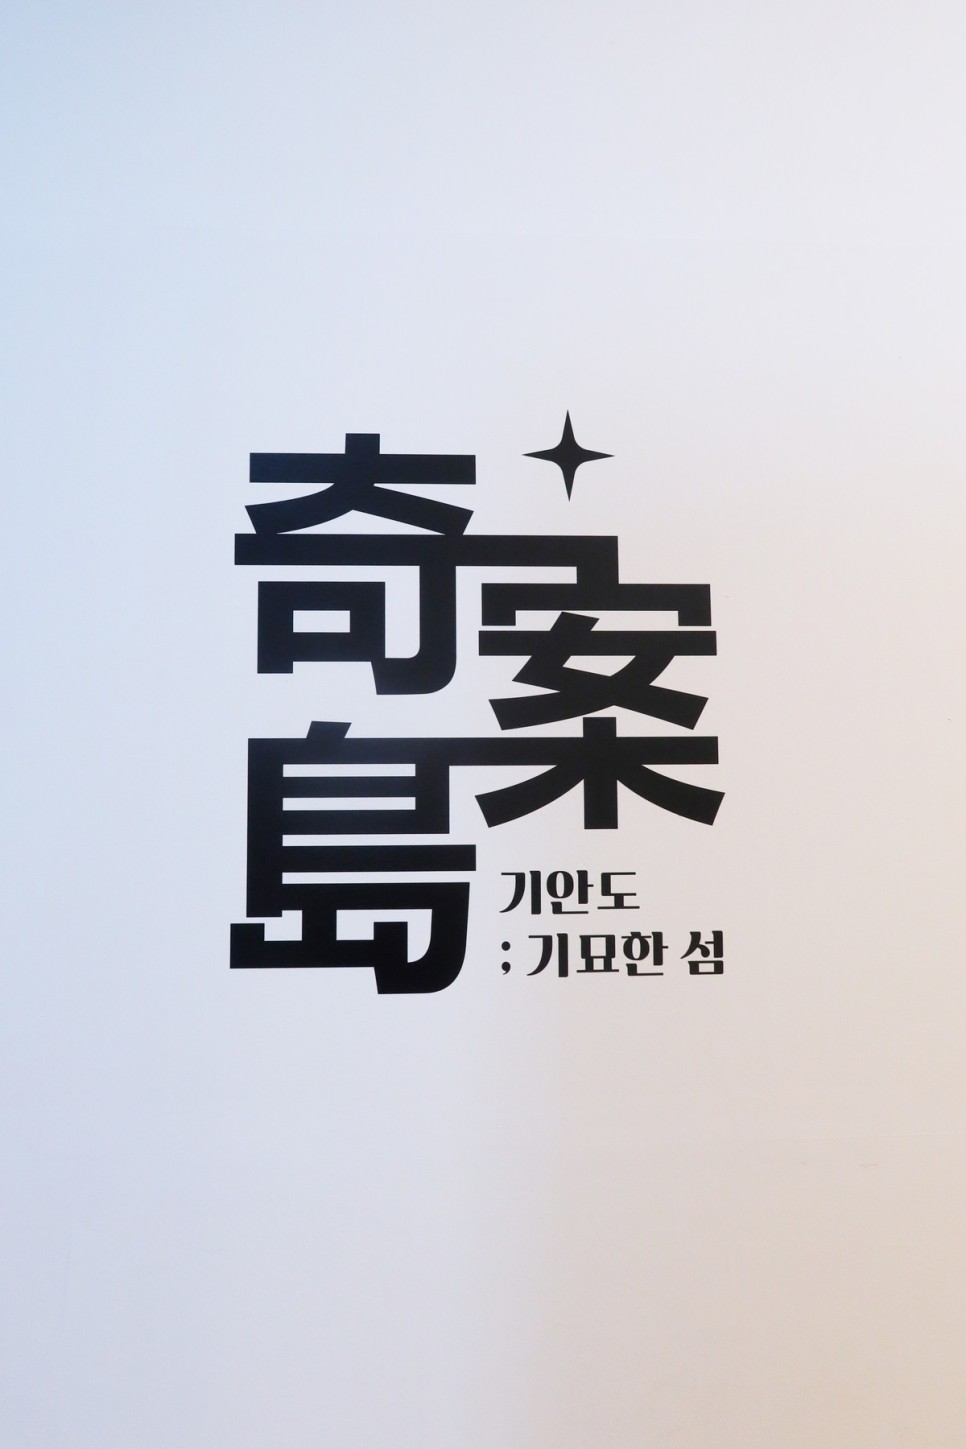 기안84 전시회 성수동 팝업 3월-4월, 서울 데이트코스! 다크룸 무신사 드롭 한정판 핫한데